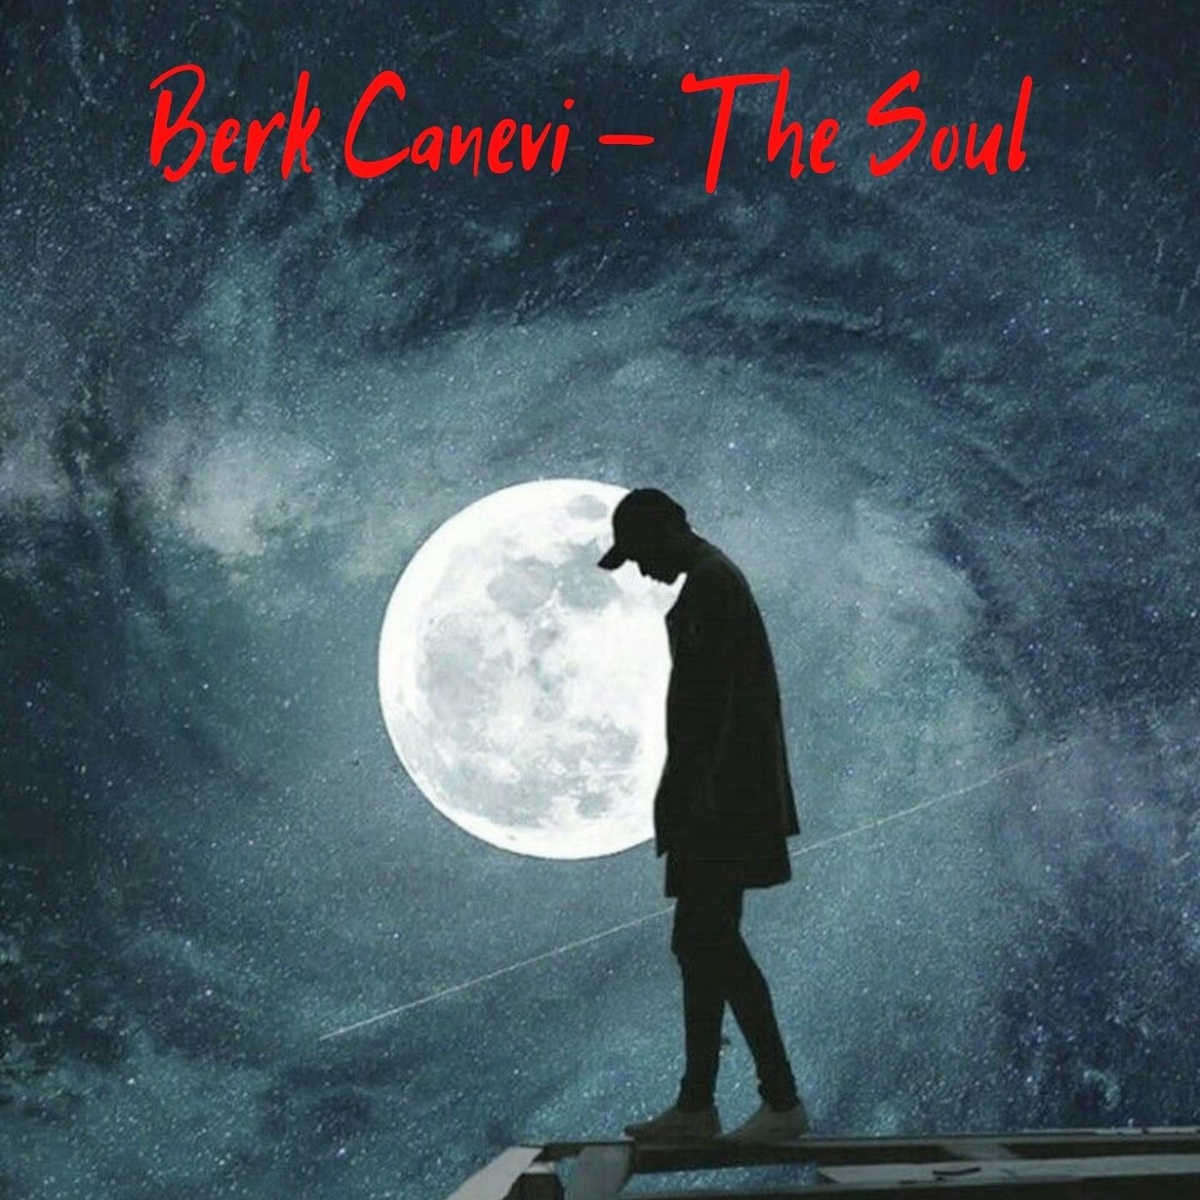 Berk Canevi - The Soul (Original Mix)